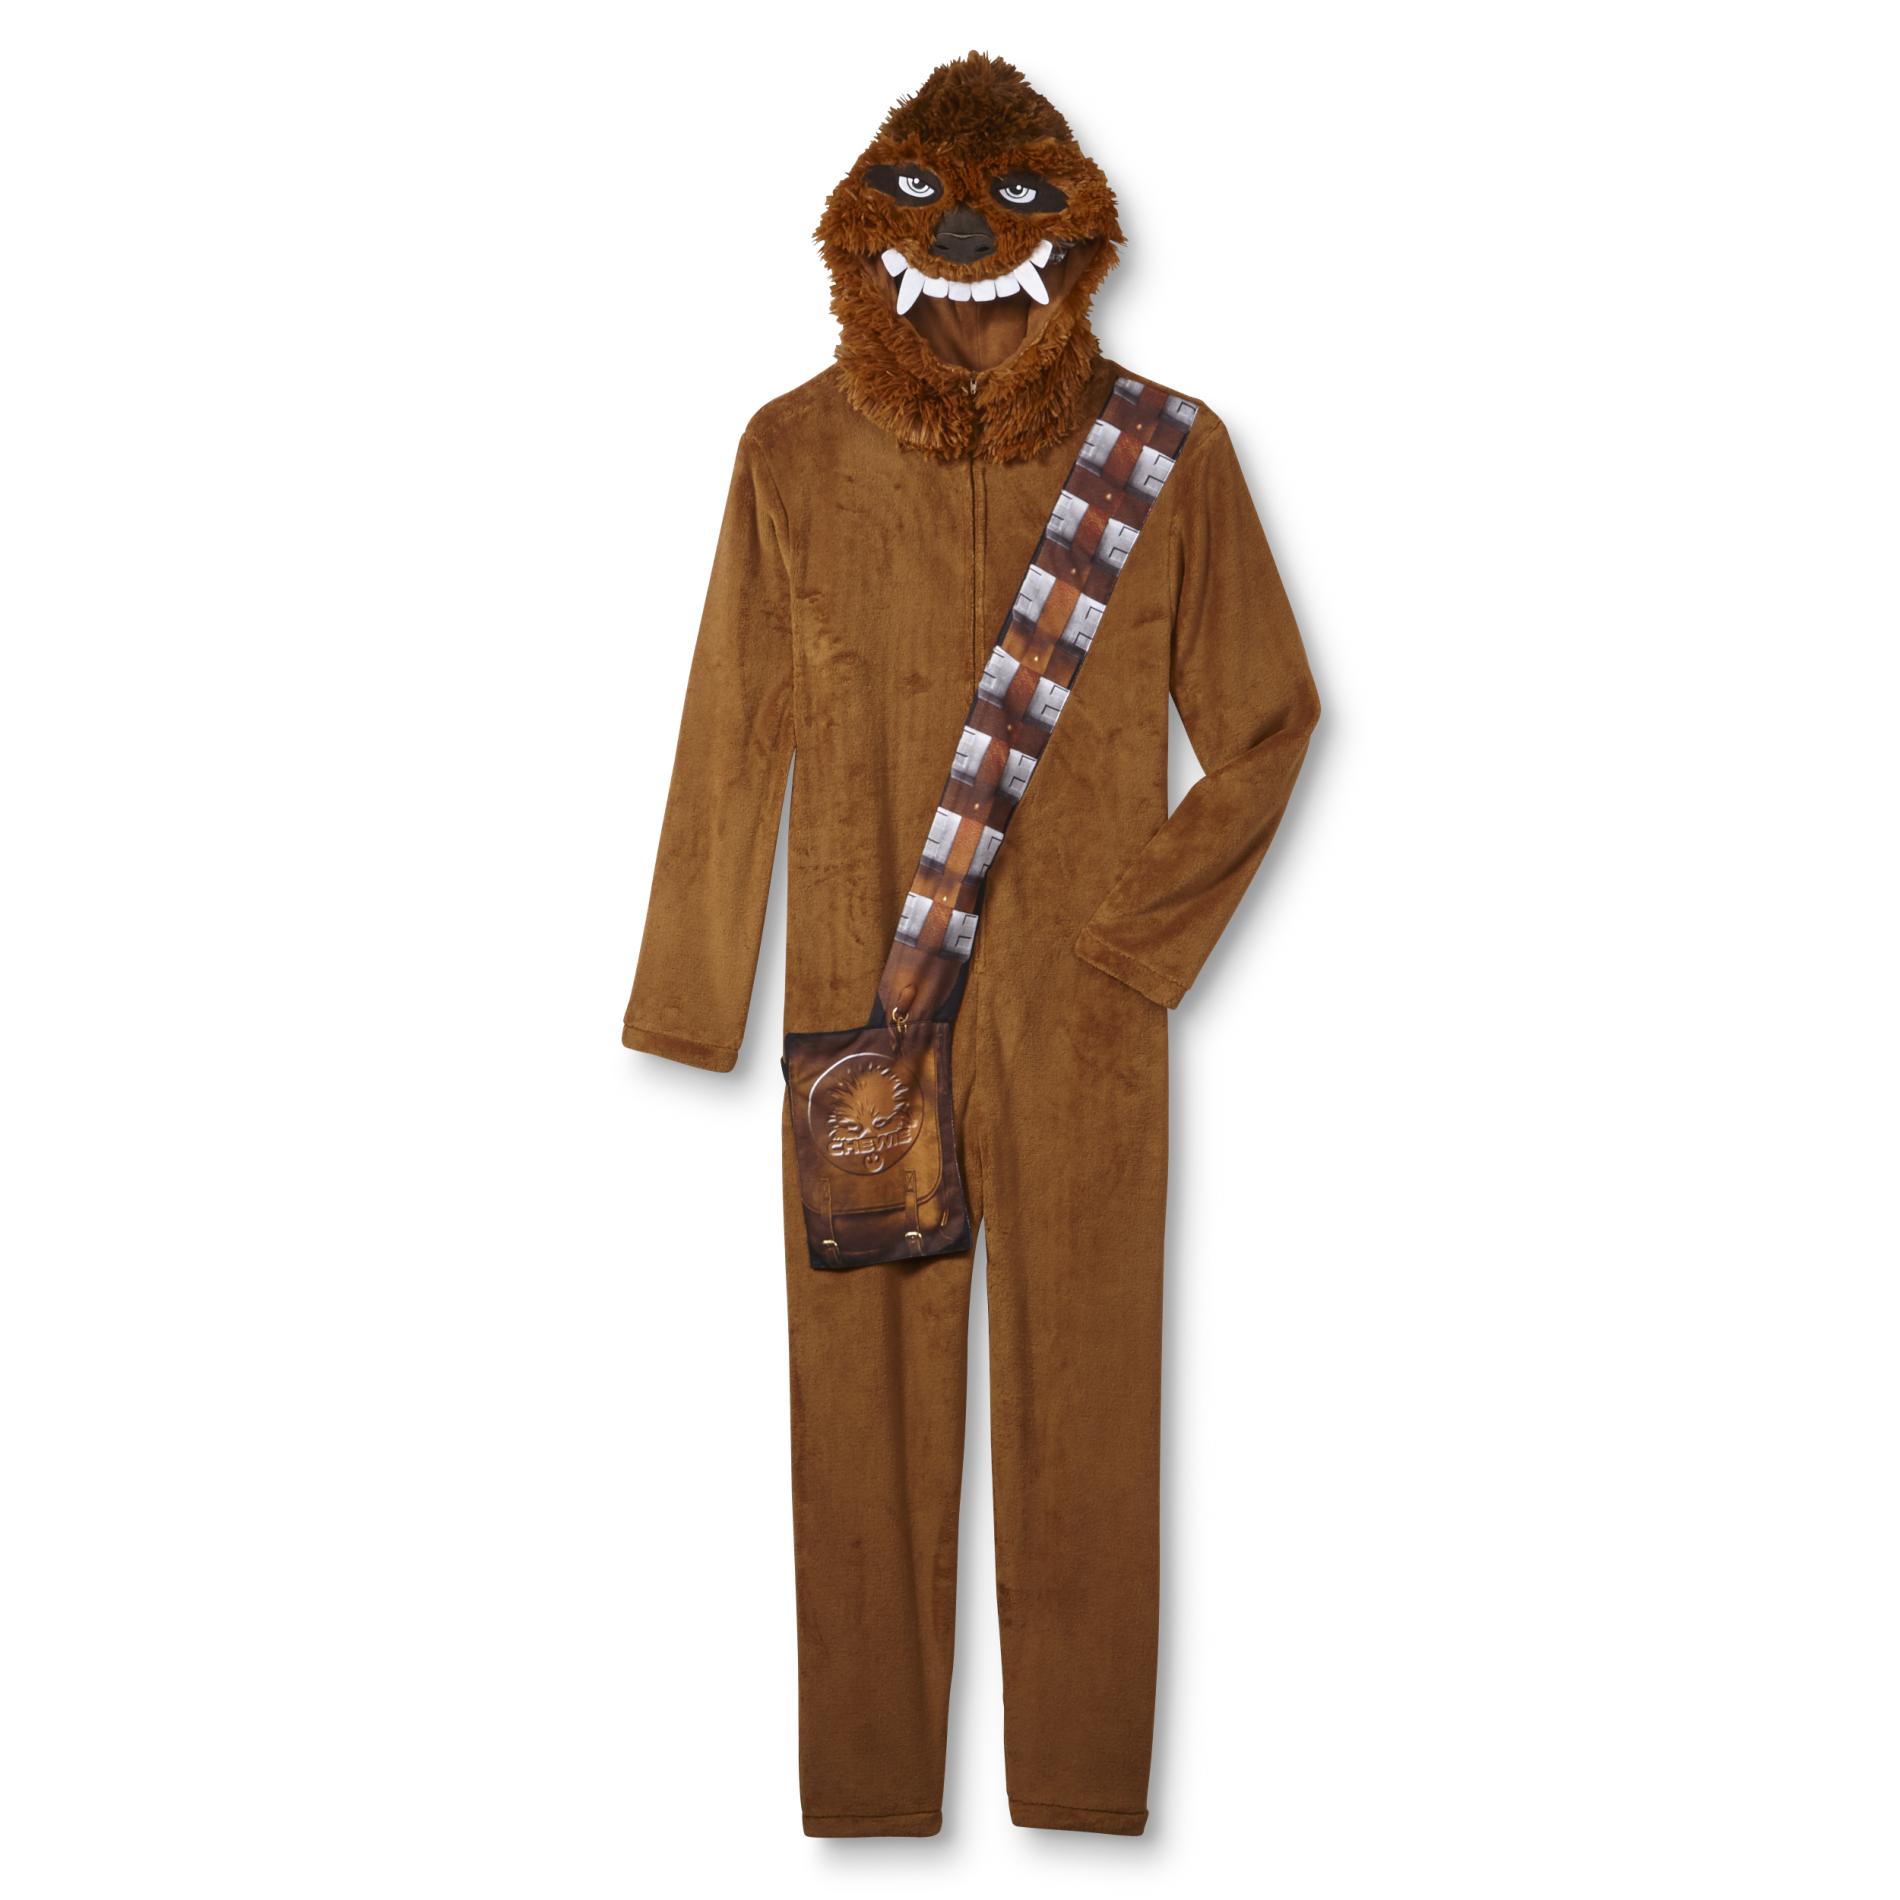 Lucasfilm Star Wars Men's One-Piece Fleece Pajamas - Chewbacca